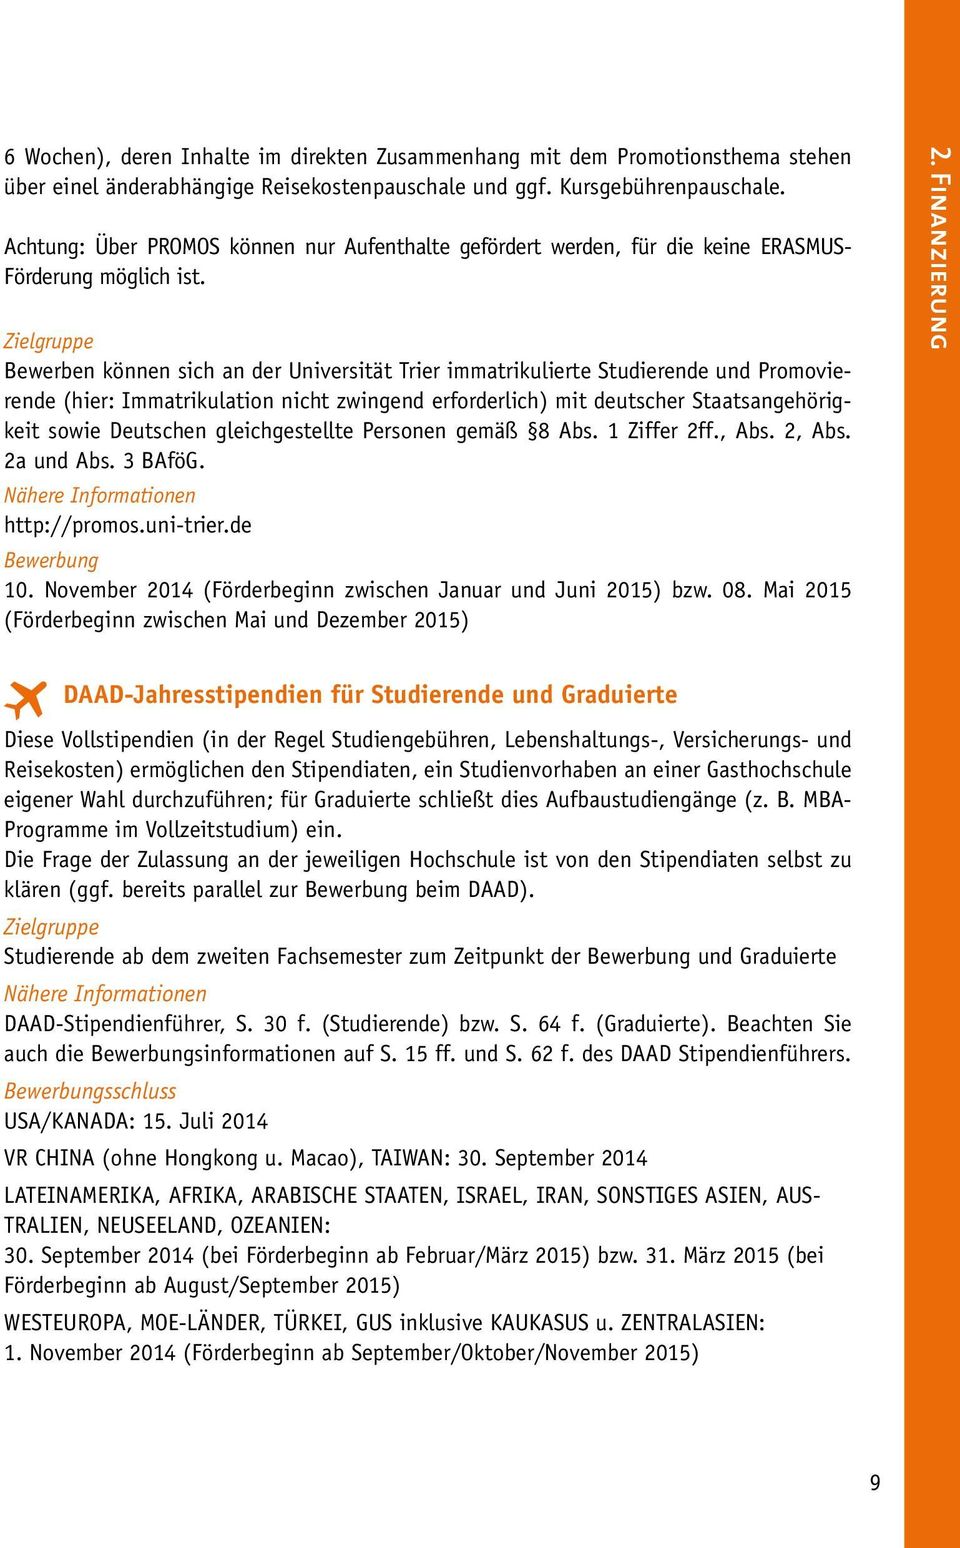 Bewerben können sich an der Universität Trier immatrikulierte Studierende und Promovierende (hier: Immatrikulation nicht zwingend erforderlich) mit deutscher Staatsangehörigkeit sowie Deutschen